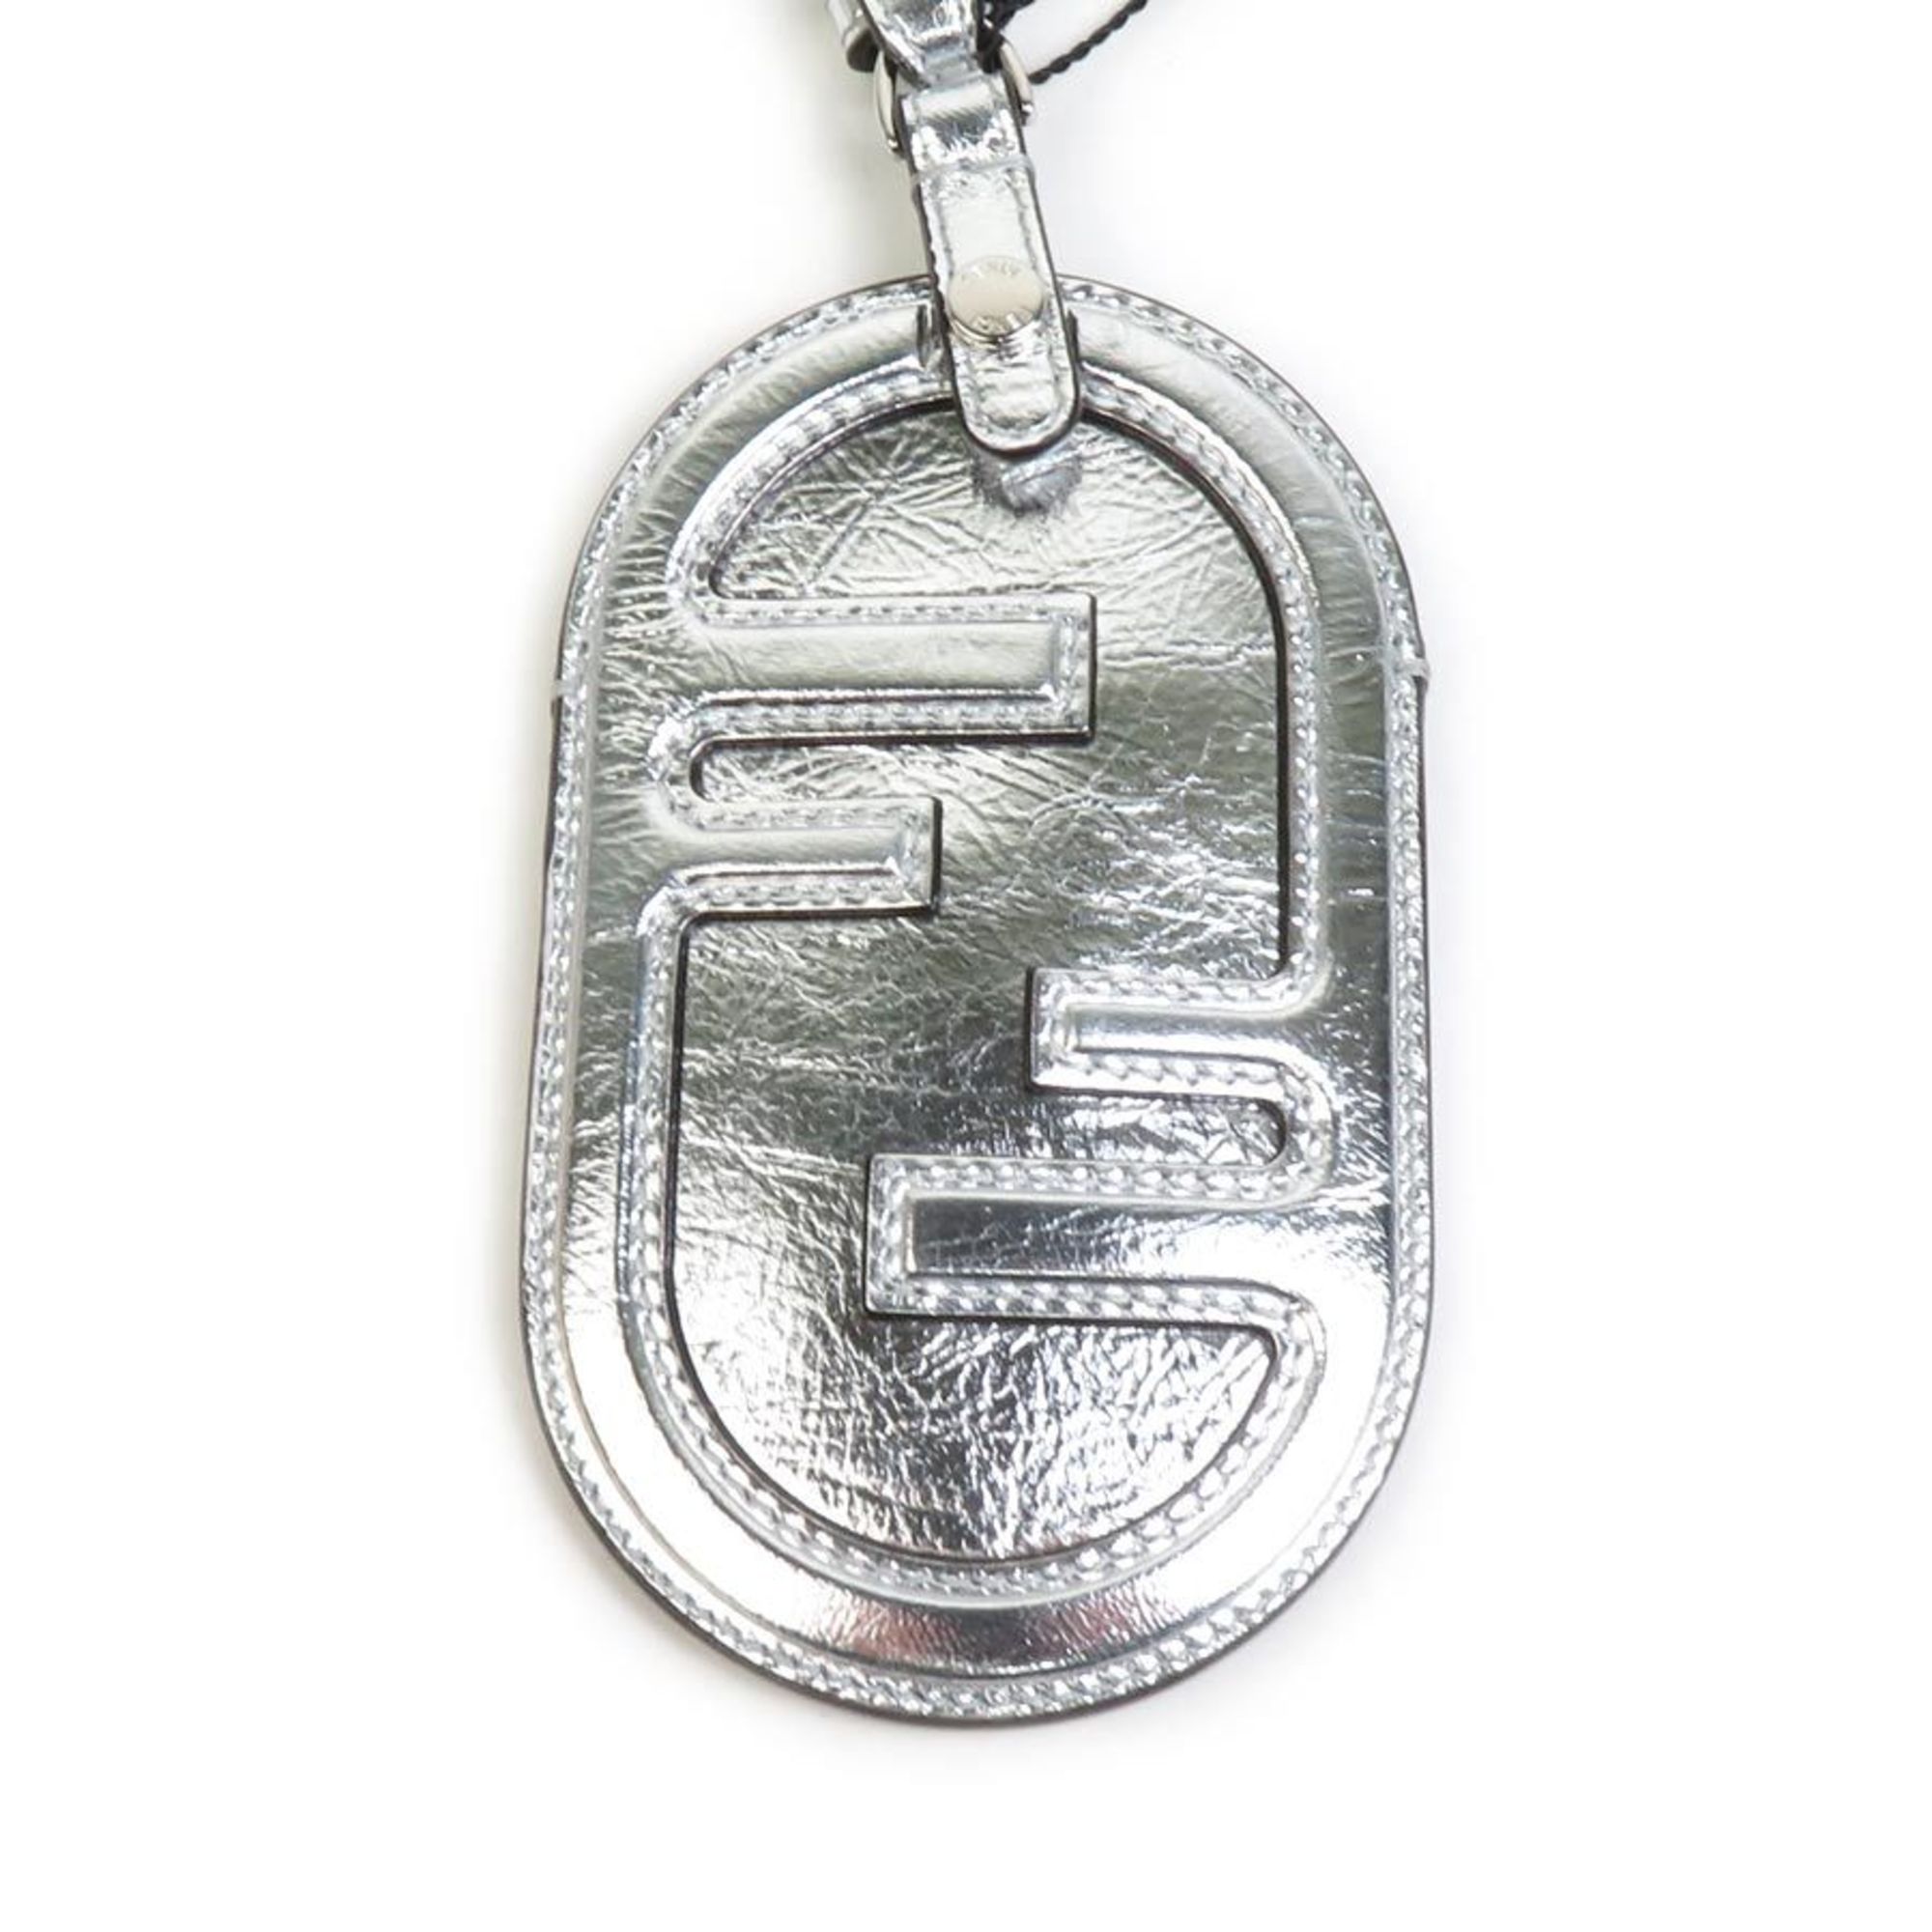 FENDI Badge Holder Leather Silver Unisex